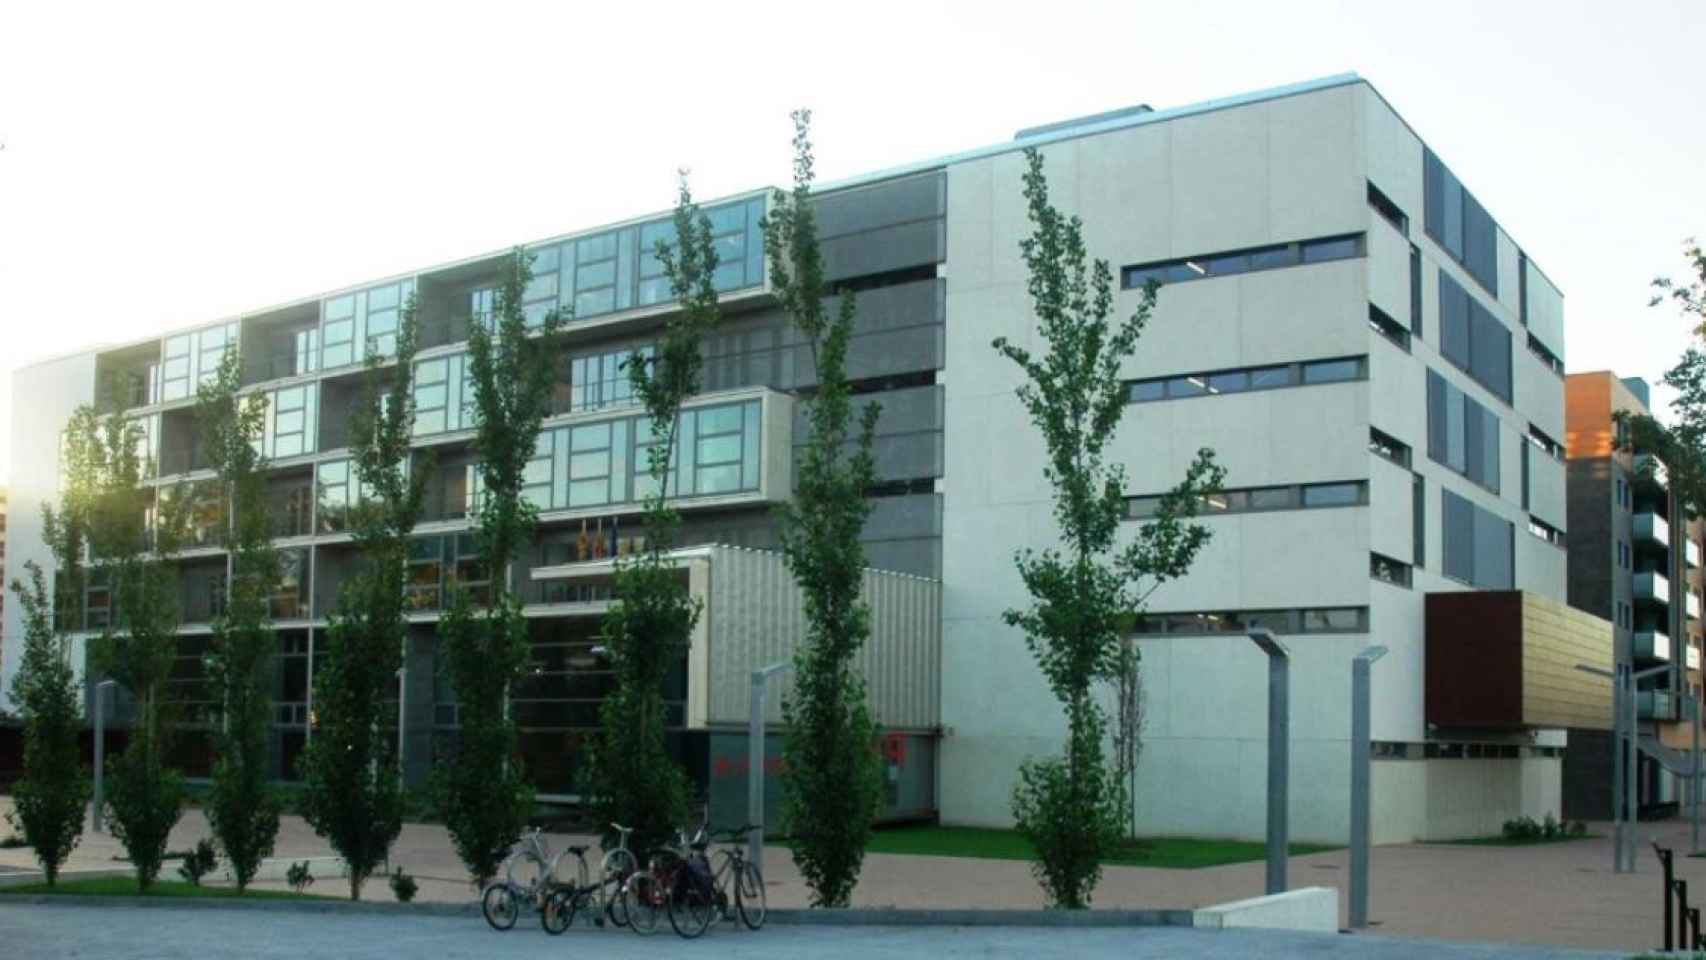 Edificio de la Audiencia de Girona, donde se ha celebrado el juicio en el que la fiscalía ha pedido 12 años de cárcel para el acusado / CG